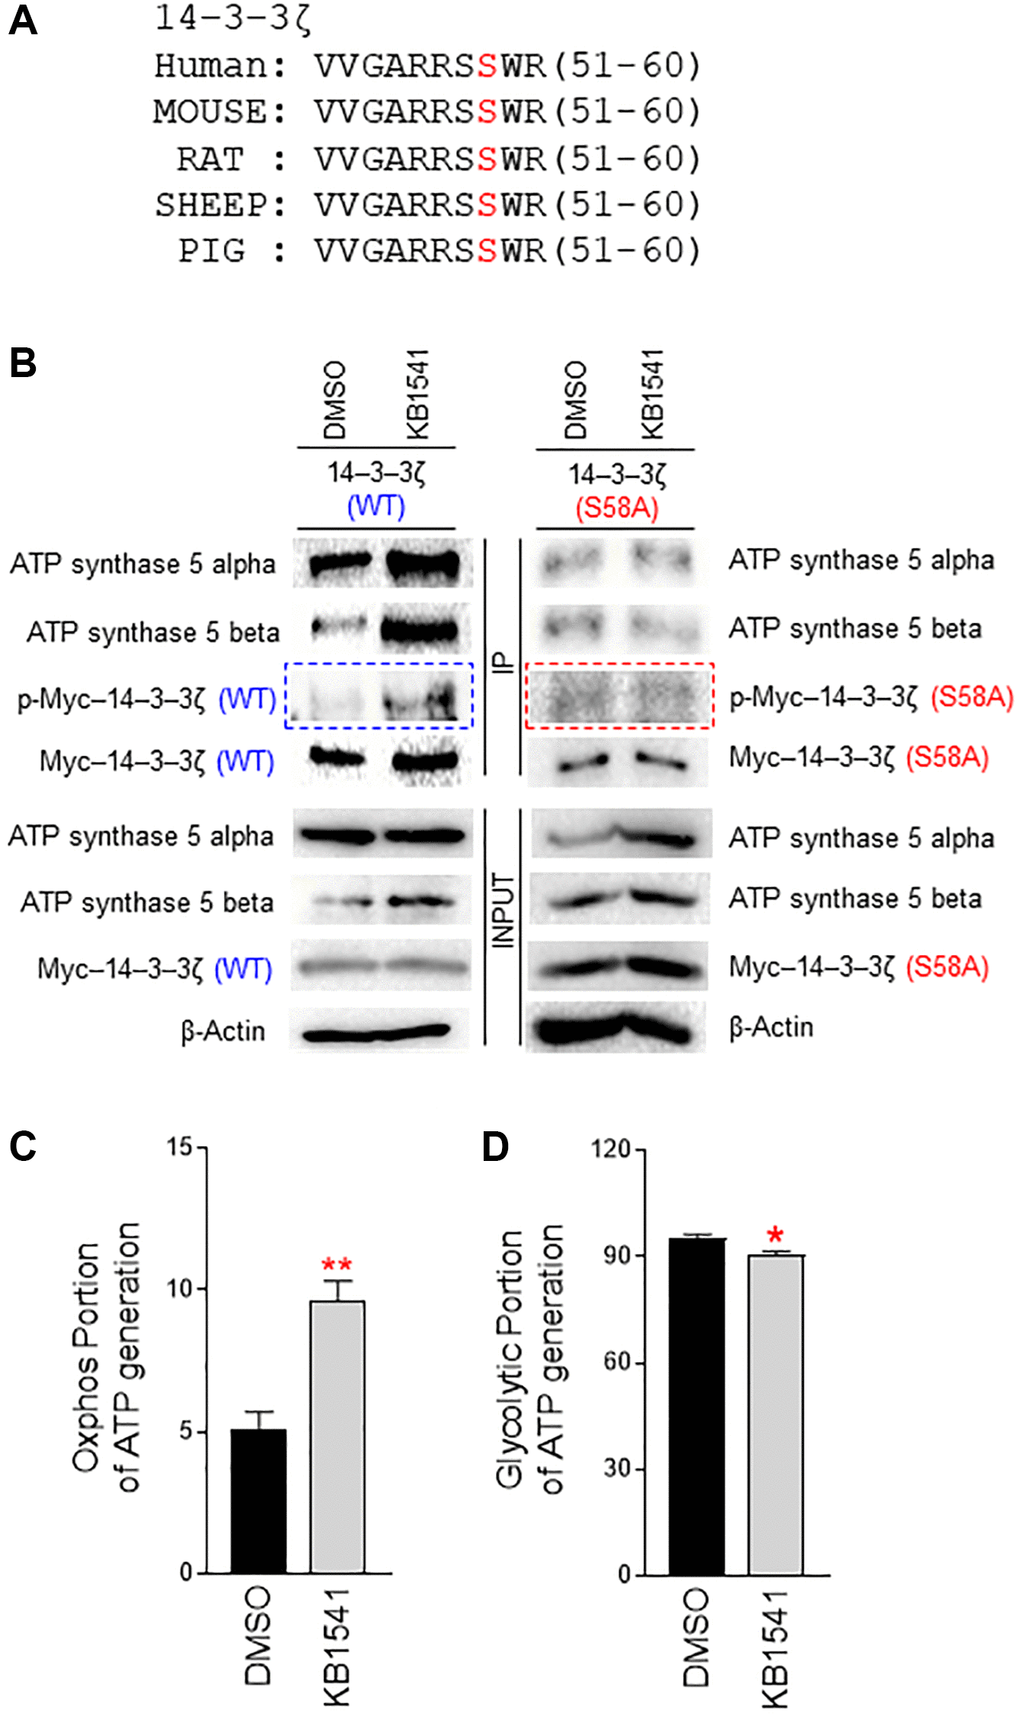 14–3–3ζ regulates ATP synthase 5 alpha/beta dimerization. (A) Multiple sequence alignment shows a conserved motif in 14–3–3ζ across species (human, mouse, rat, sheep, pig). A potential phosphorylation motif in 14–3–3ζ was predicted by using kinase prediction tool (https://services.healthtech.dtu.dk/service.php?NetPhos-3.1). Ser 58 in 14–3–3ζ was predicted as a potential phosphorylation site. (B) Effect of KB1541 on ATP synthase 5 alpha/beta dimerization in vivo. Cells were transfected with pCMV–Myc–14–3–3ζ (WT) or pCMV–Myc–14–3–3ζ (S58A) and treated with DMSO or KB1541. Then, immunoprecipitation was performed with an antibody against Myc-tag. 14–3–3ζ (WT) or 14–3–3ζ (S58A) phosphorylation was detected by a phospho-Ser antibody. 14–3–3ζ (WT) phosphorylation was increased upon KB1541 treatment (blue boxed areas). However, 14–3–3ζ (S58A) phosphorylation did not increase upon KB1541 treatment (red boxed areas). 14–3–3ζ (WT) and ATP synthase 5 alpha interaction increased upon KB1541 treatment. The subsequent interaction of 14–3–3ζ (WT) with ATP synthase 5 beta also increased. However, 14–3–3ζ (S58A) and ATP synthase 5 alpha interaction was not affected by KB1541 treatment, nor was the interaction of 14–3–3ζ (S58A) with ATP synthase 5 beta. (C and D) OXPHOS portion and glycolytic portion of ATP production (*P **P t-test). Mean ± S.D., n = 3.